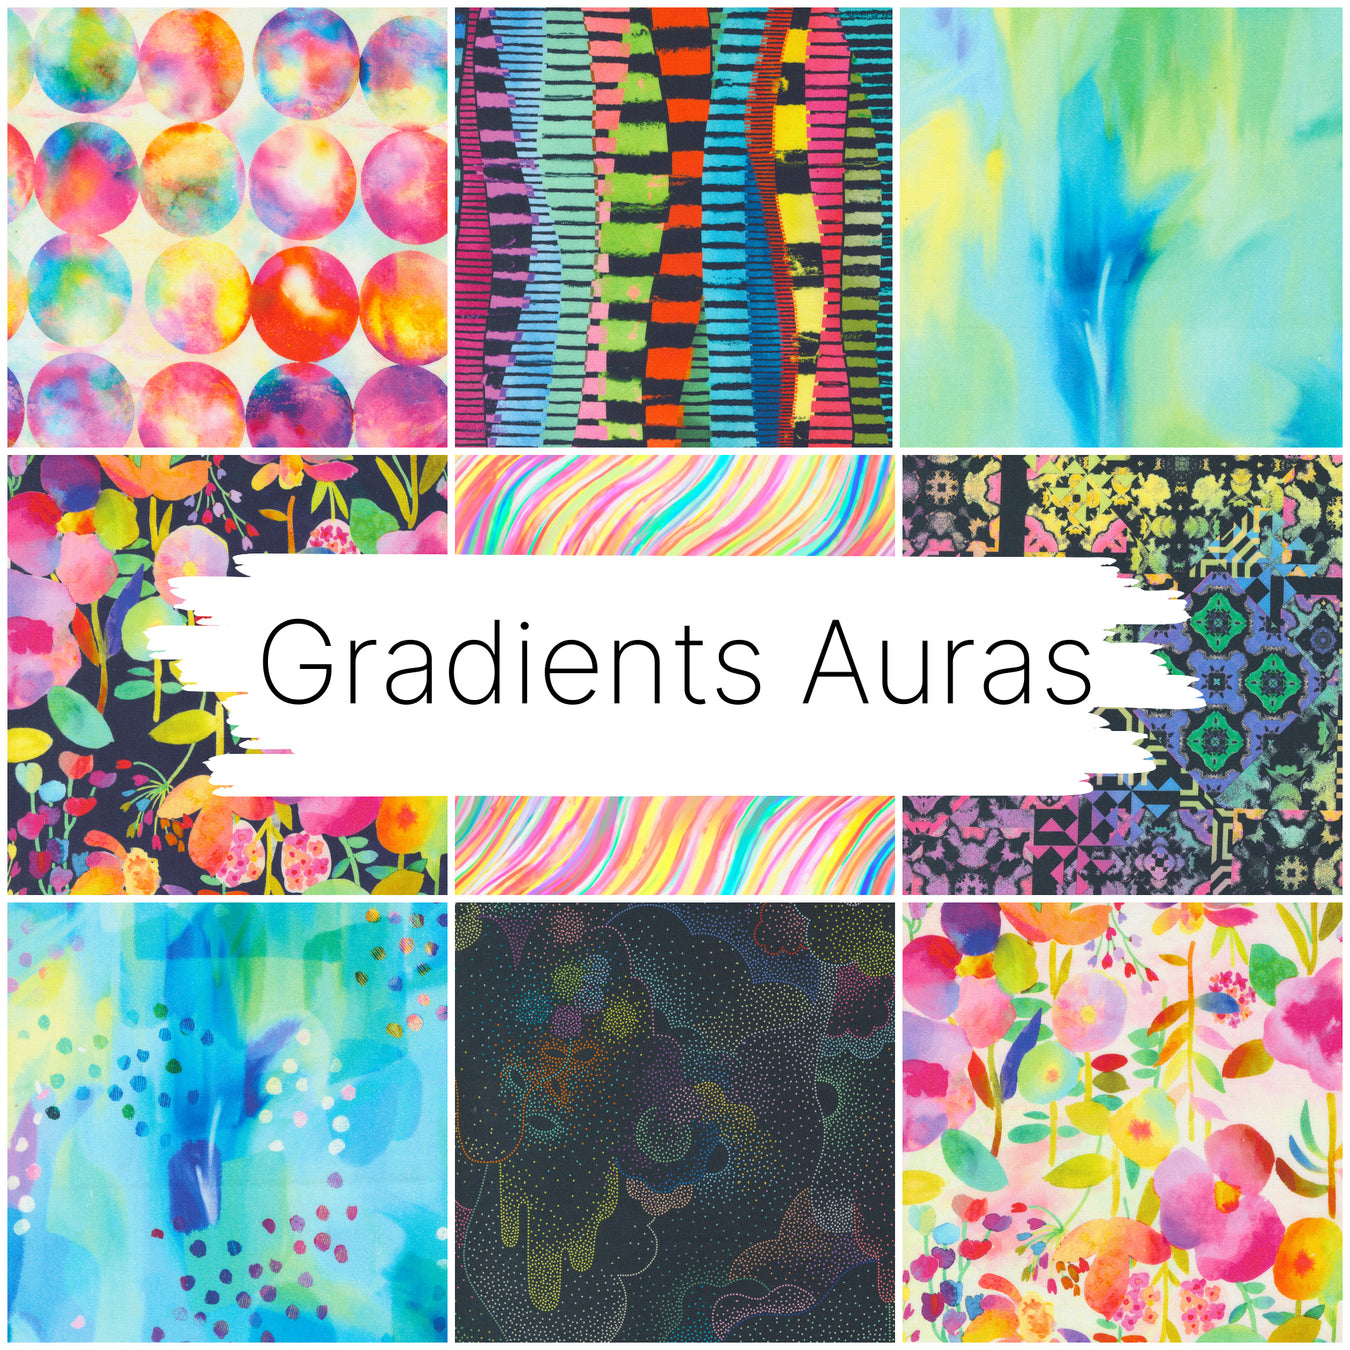 Gradients Auras